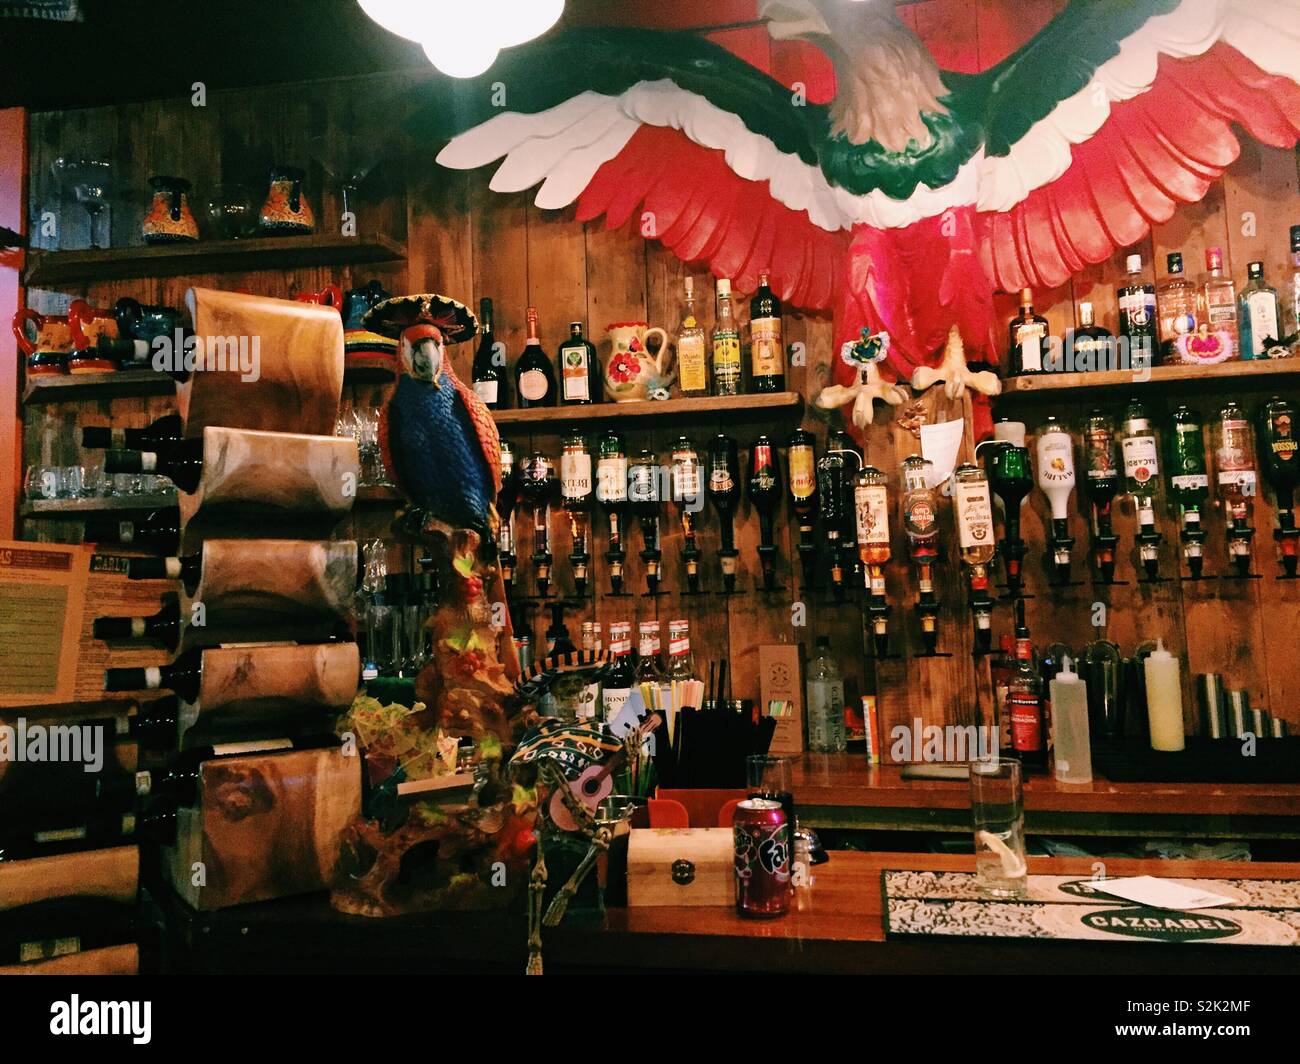 Foto von einem bunten mexikanischen Bar Restaurant mit Frage neue Film Filter bearbeitet Stockfoto